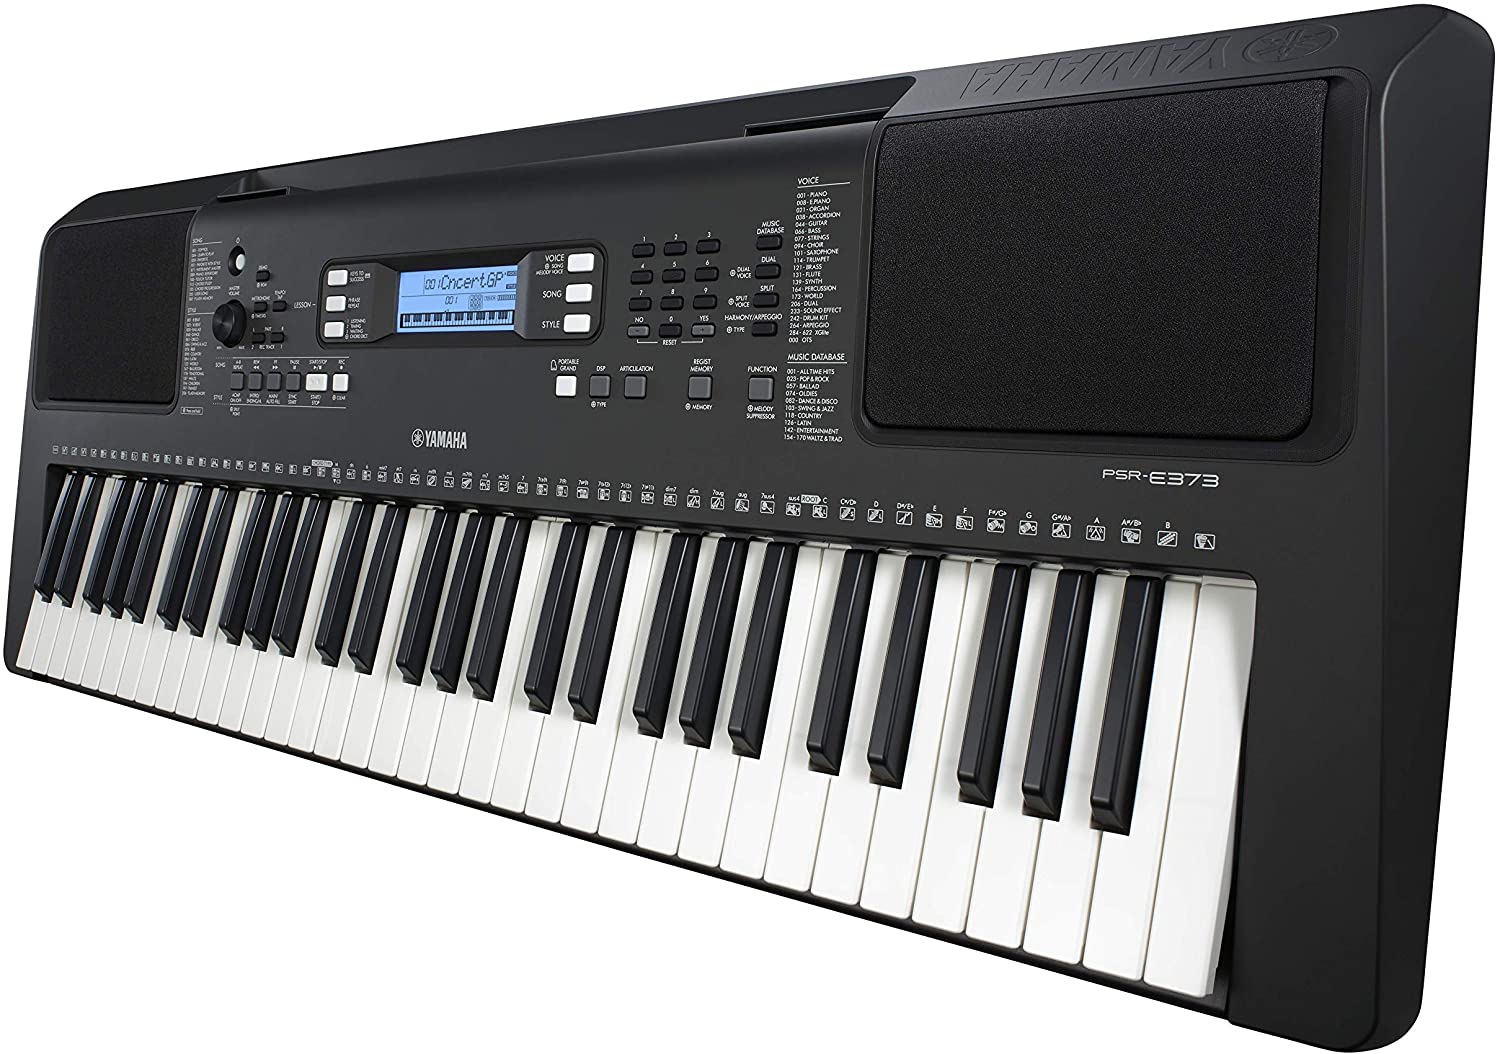 instrumentos musicales - piano Yamaha psr E373 (61teclas) con su fuente de alimentación yamaha.